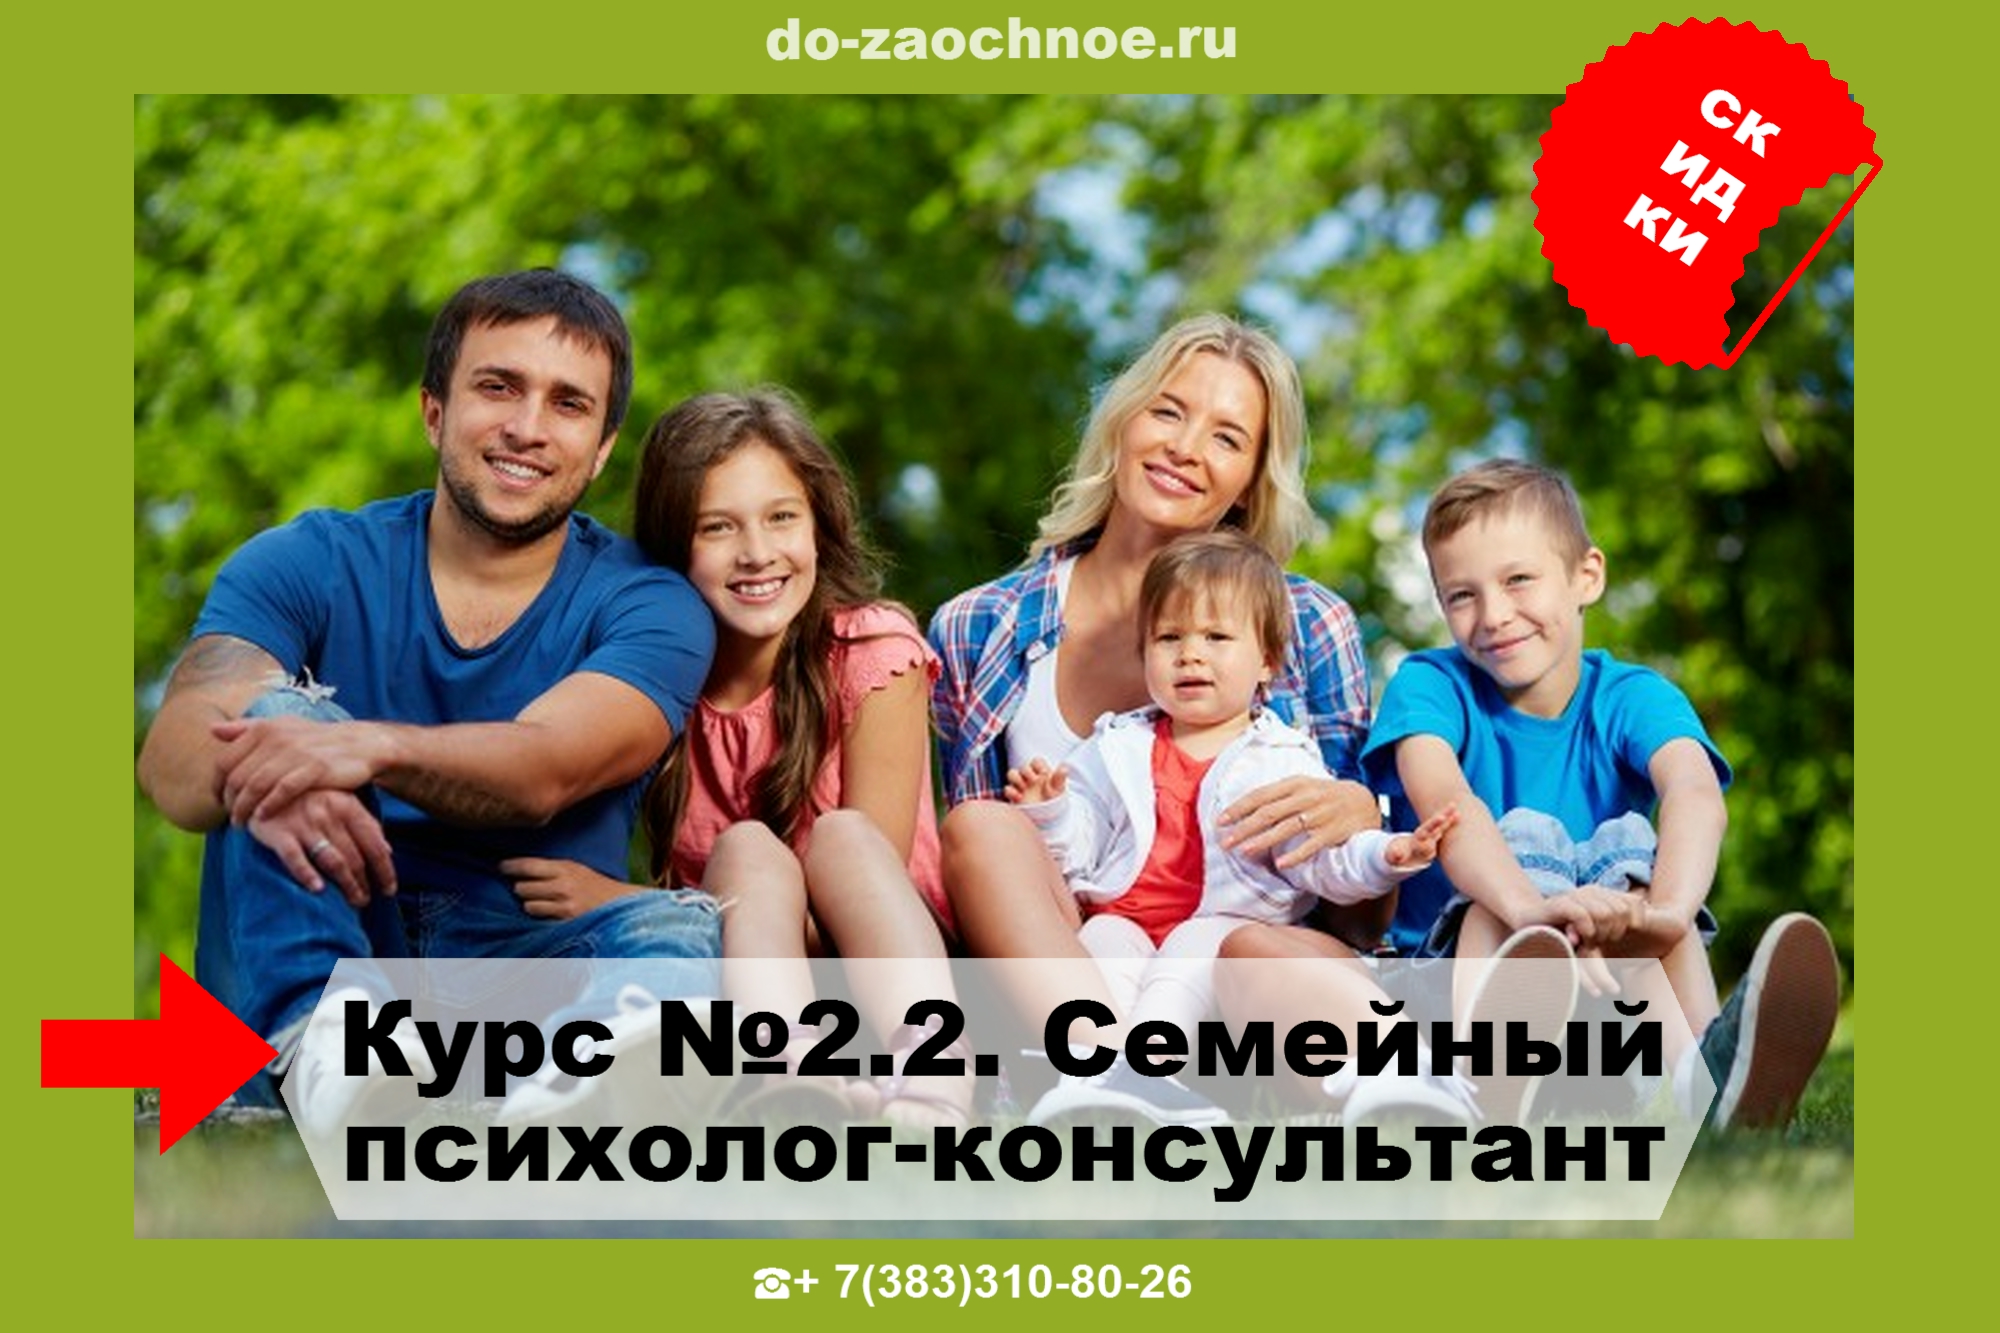 ИДПК дистанционные курсы семейной психологии на do-zaochnoe.ru тут!